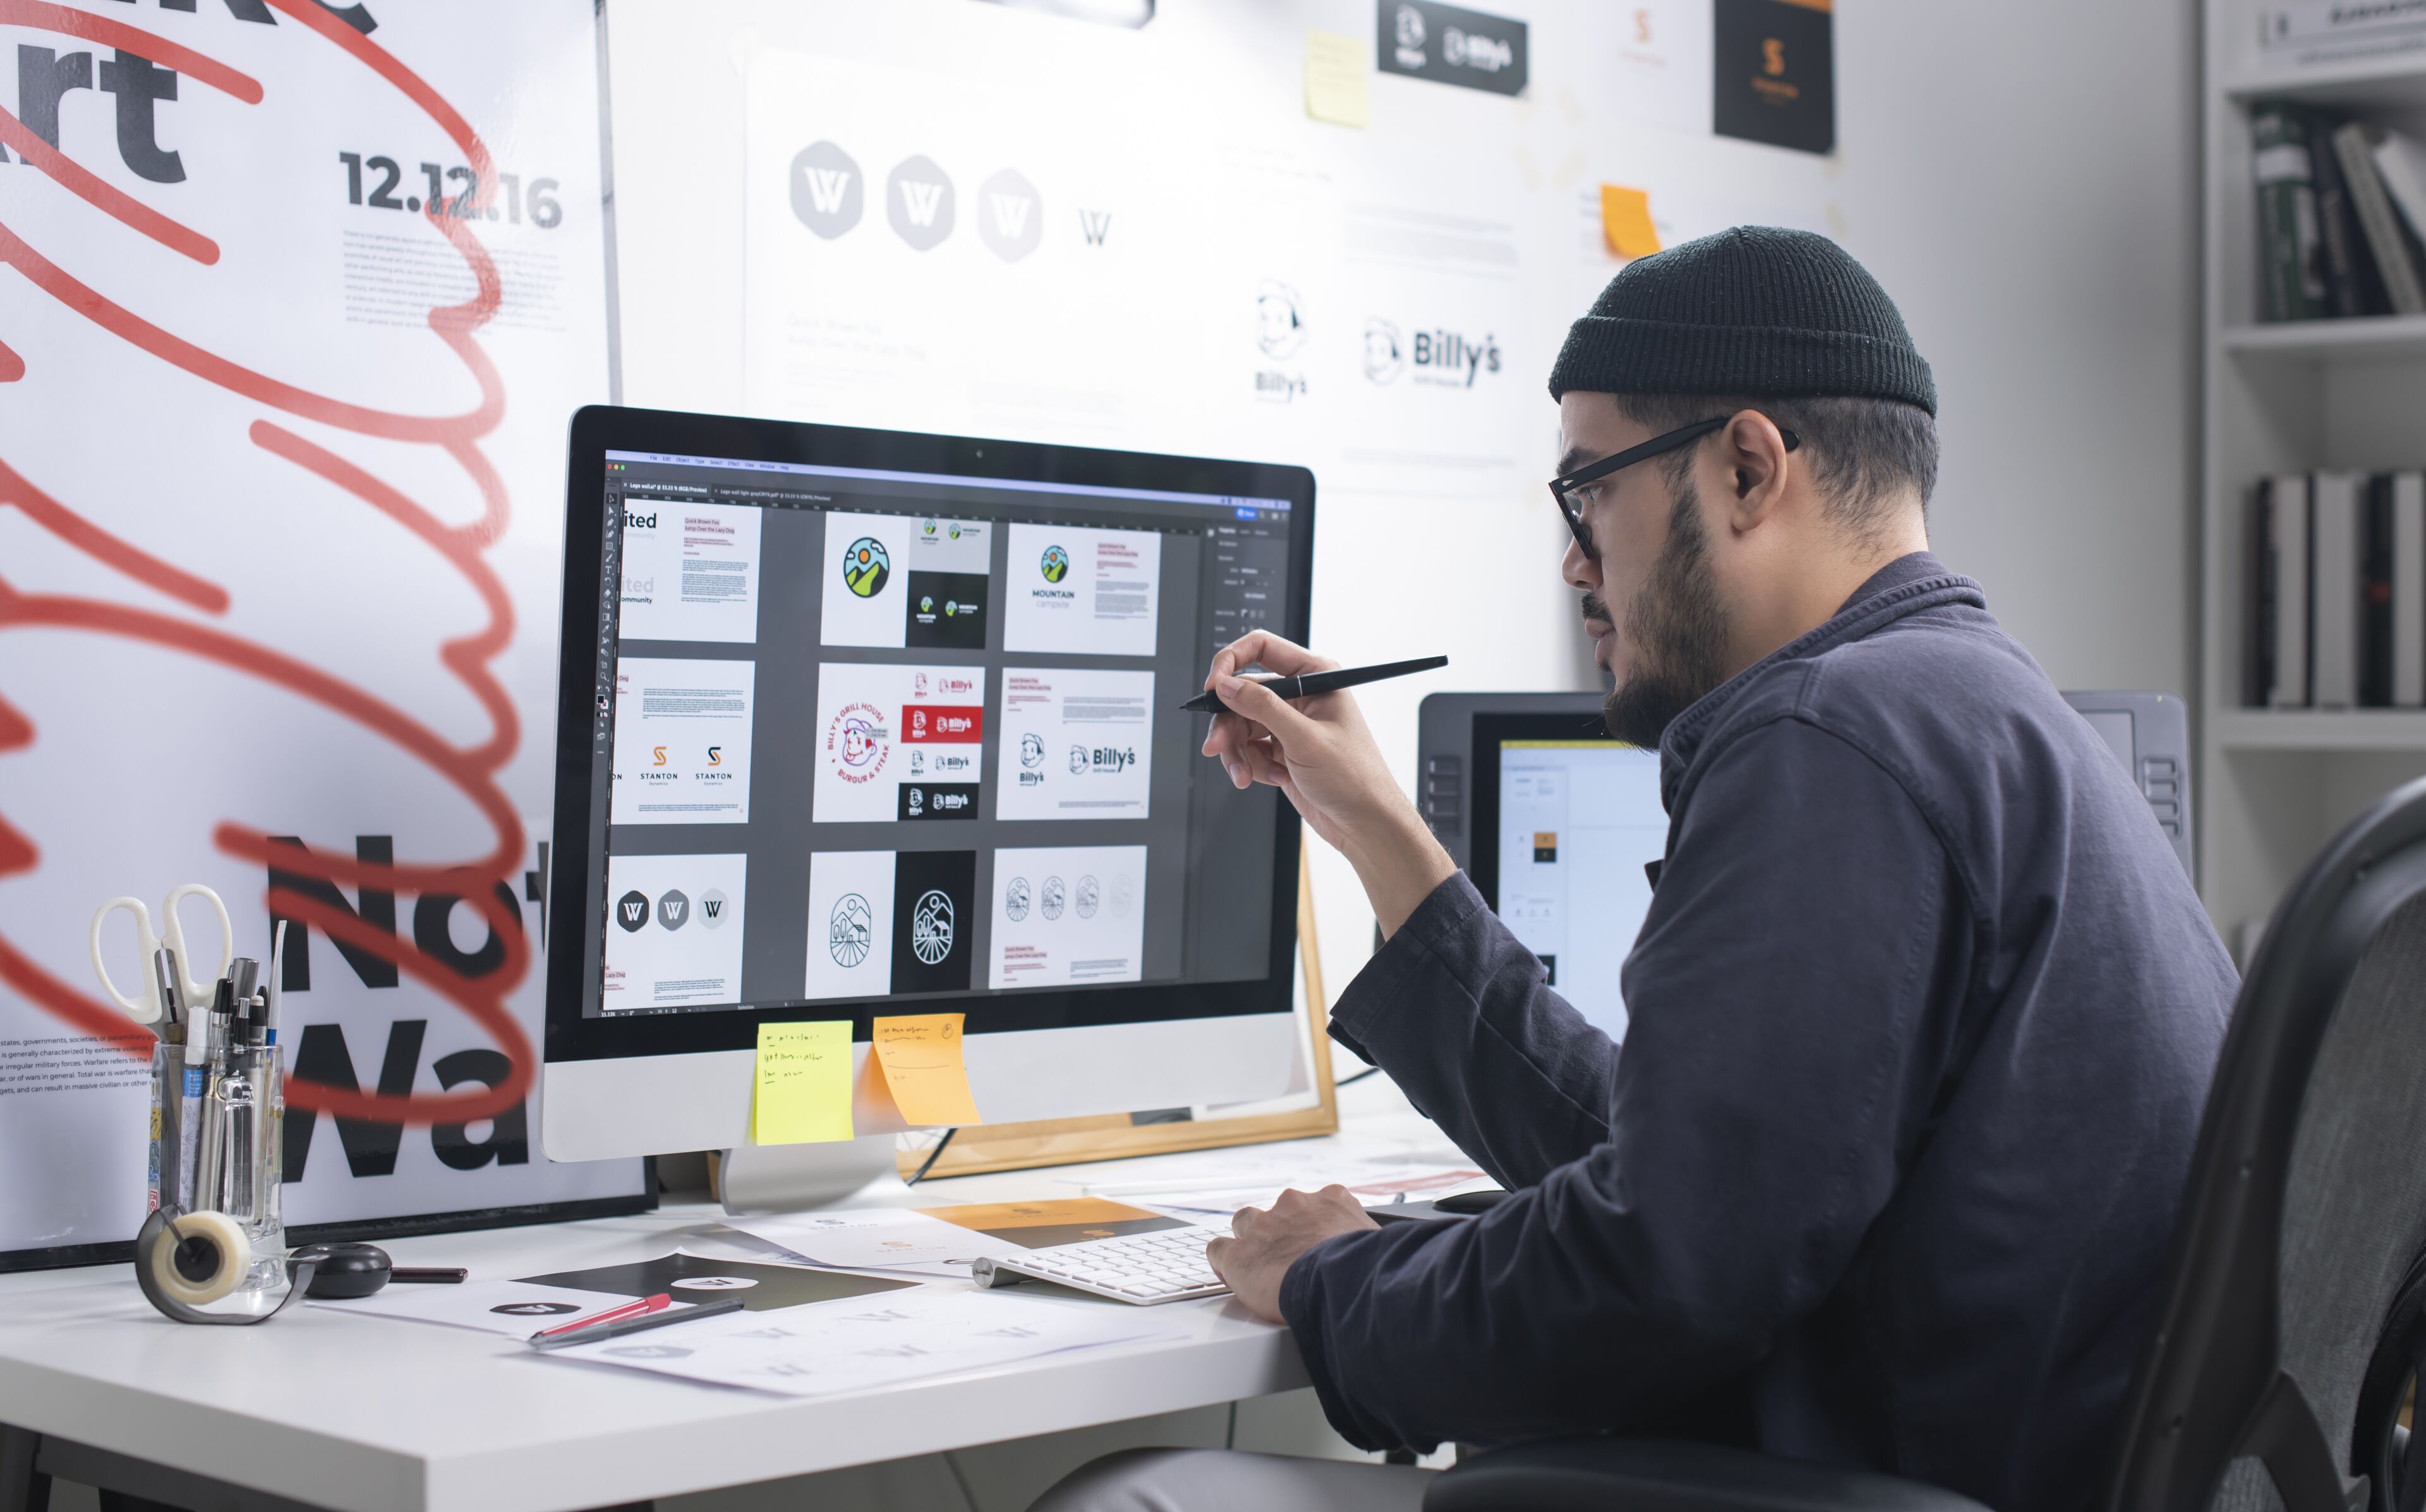 Dissenyador gràfic masculí amb barretina revisa dissenys en un monitor gran, estilografica en mà, en un espai de treball ben organitzat.